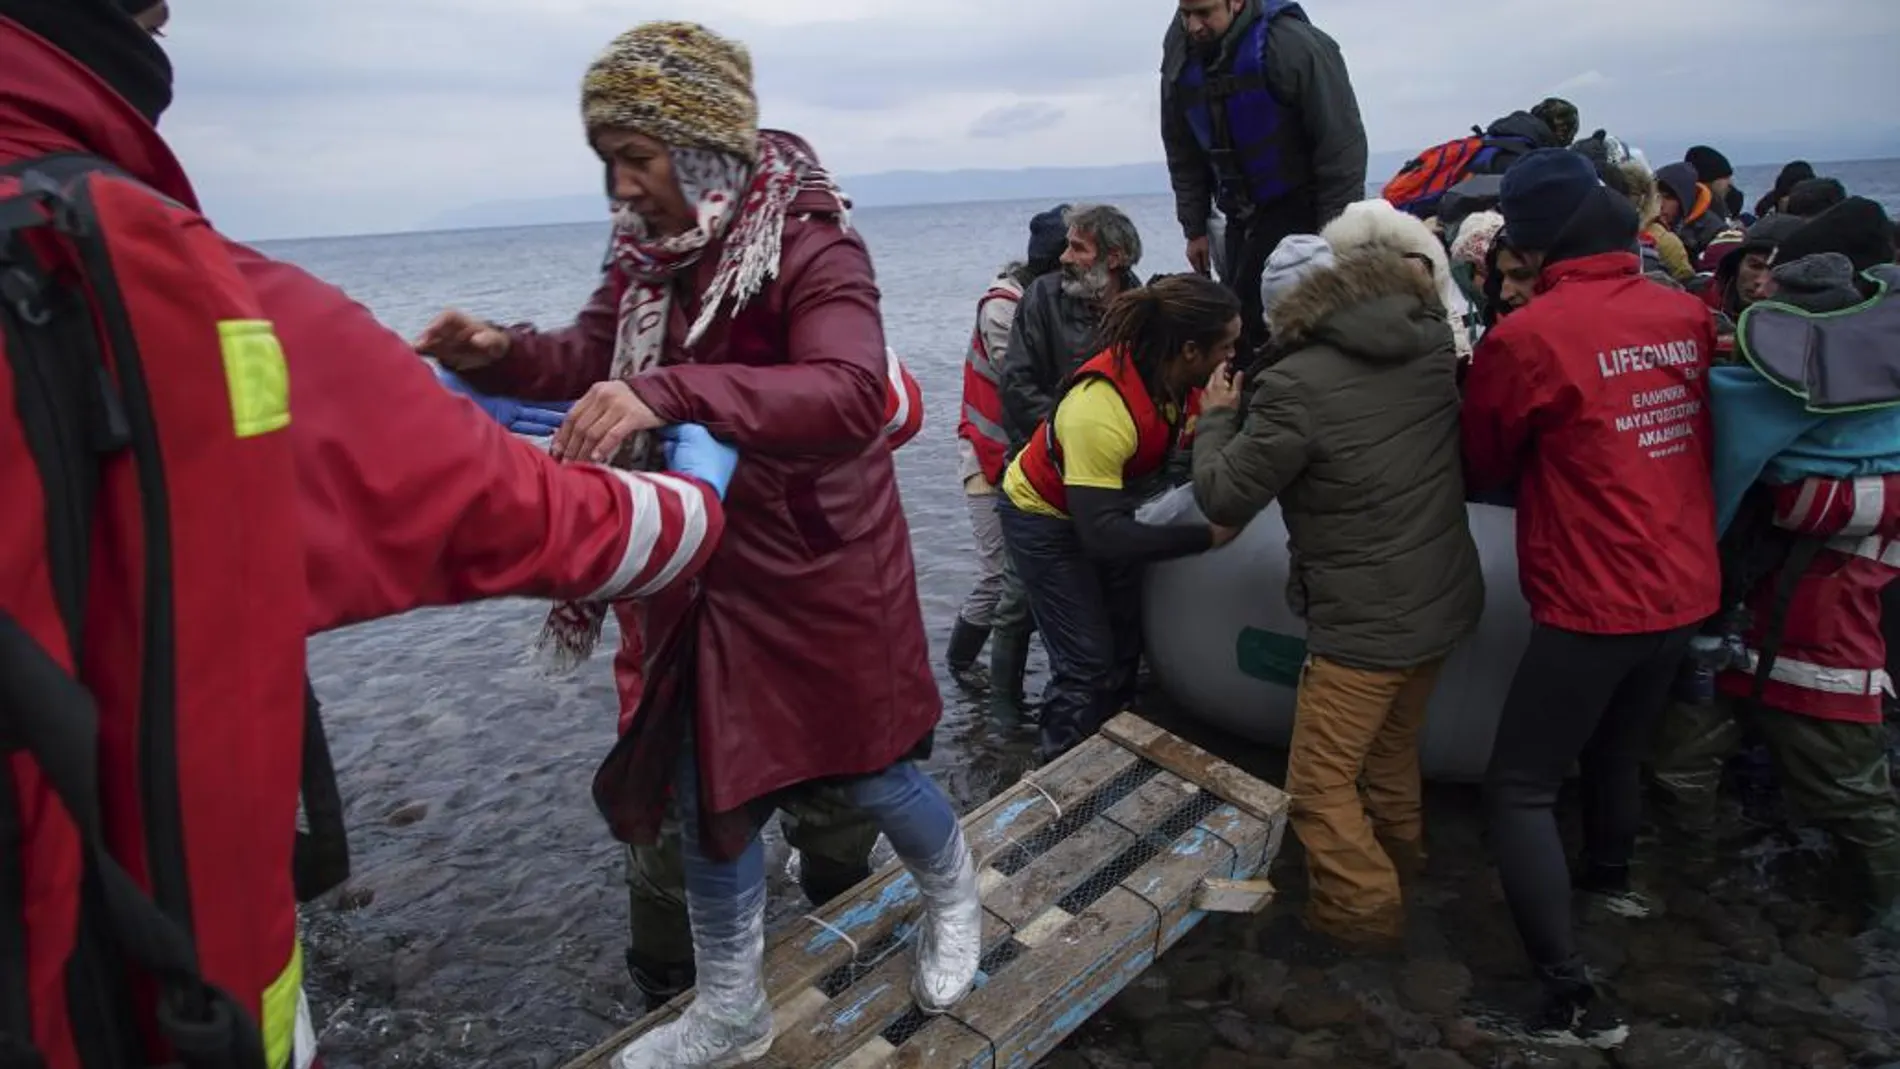 Los voluntarios ayudan a grupo de refugiados llegados a las costas griegas desde Turquía.